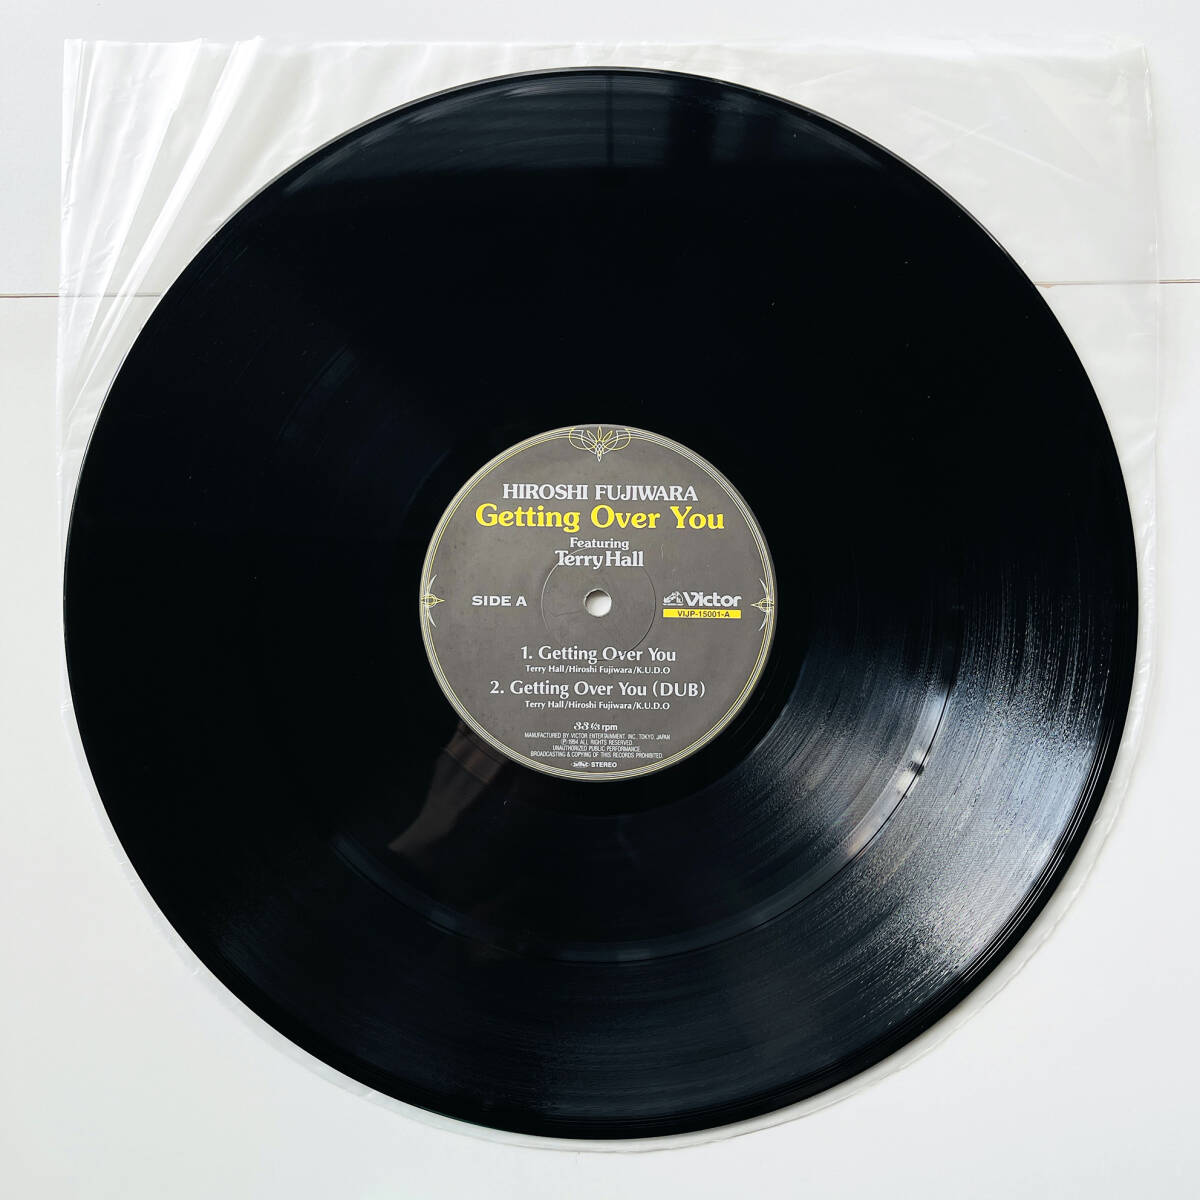  rare 12 -inch record ( Fujiwara hirosi- Getting Over You )Hiroshi Fujiwara Featuring Terry Hall